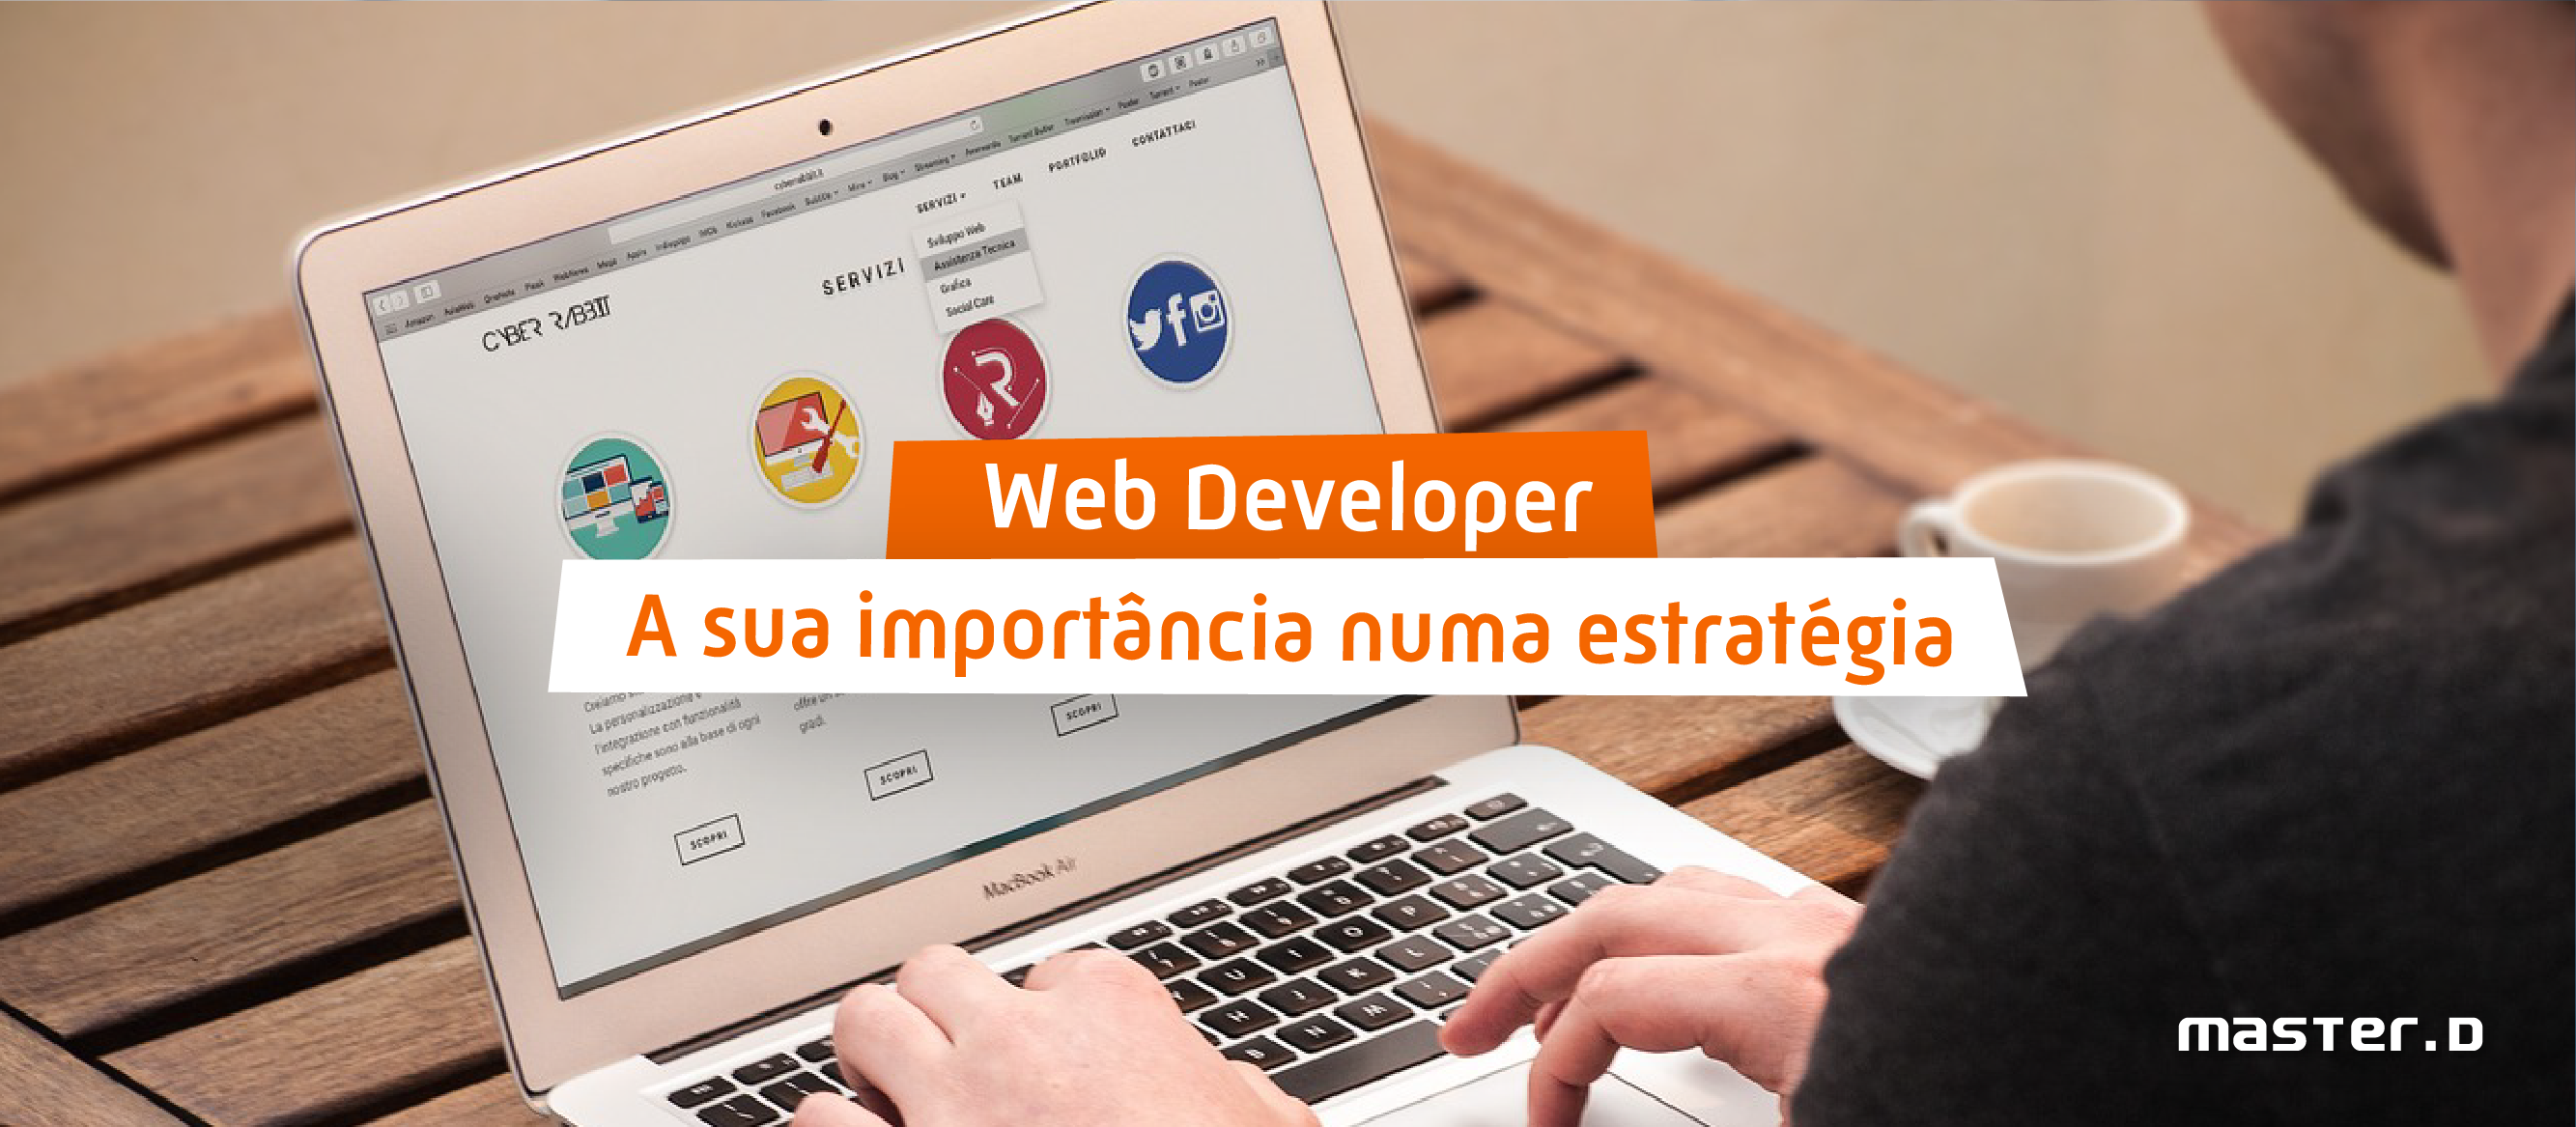 Cursos de Web Development 